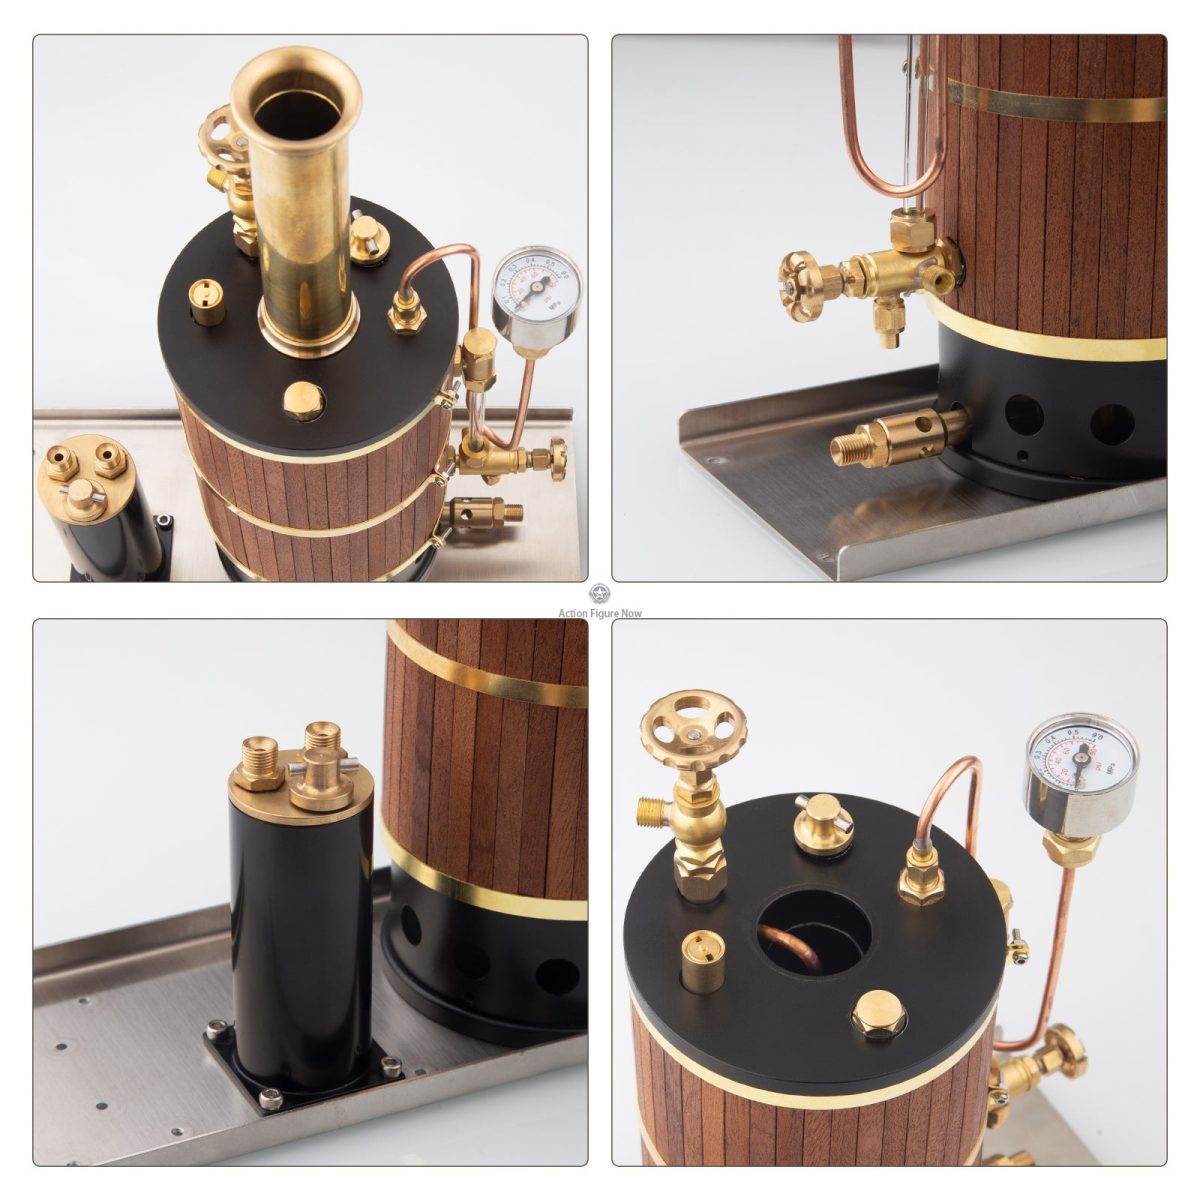 Vertical Boiler Steam Engine Boiler Model for Steam Engine Models - 230ml